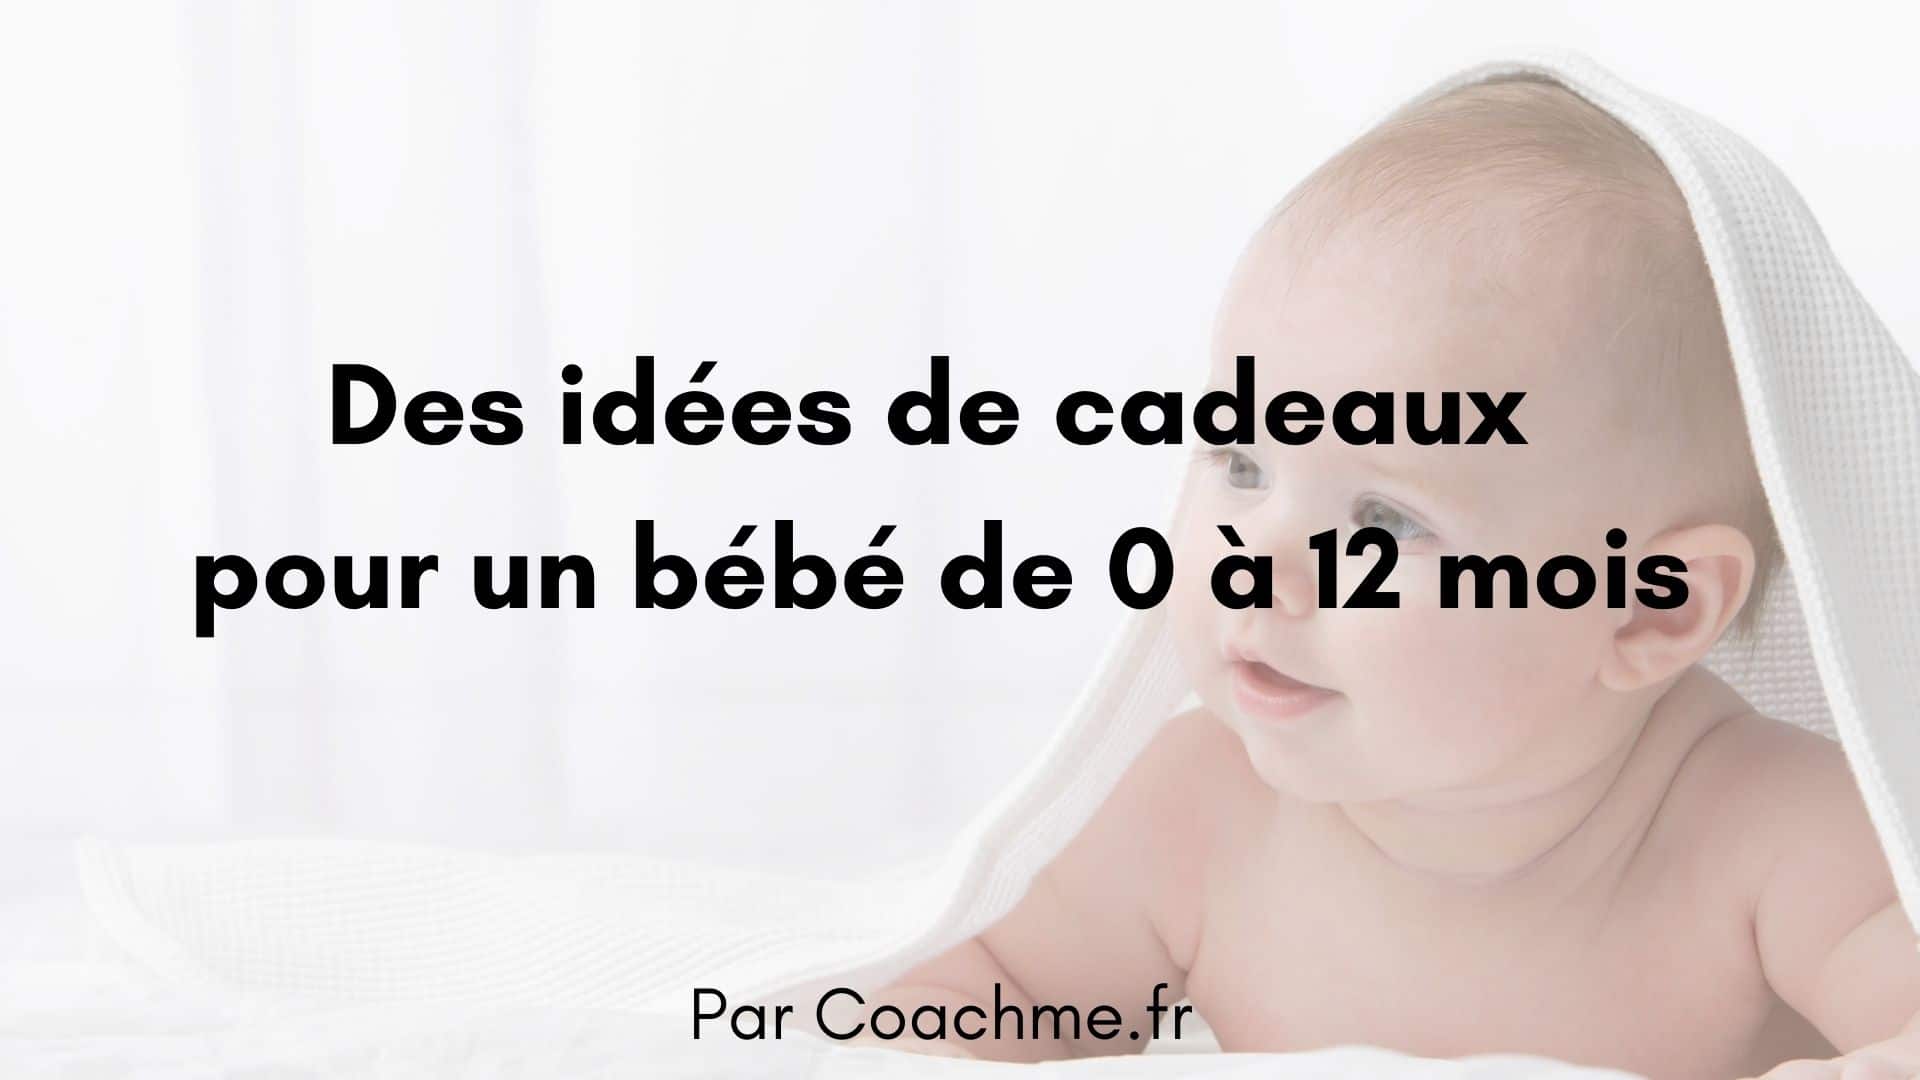 19 Idees Cadeaux Pour Un Bebe De 0 A 12 Mois